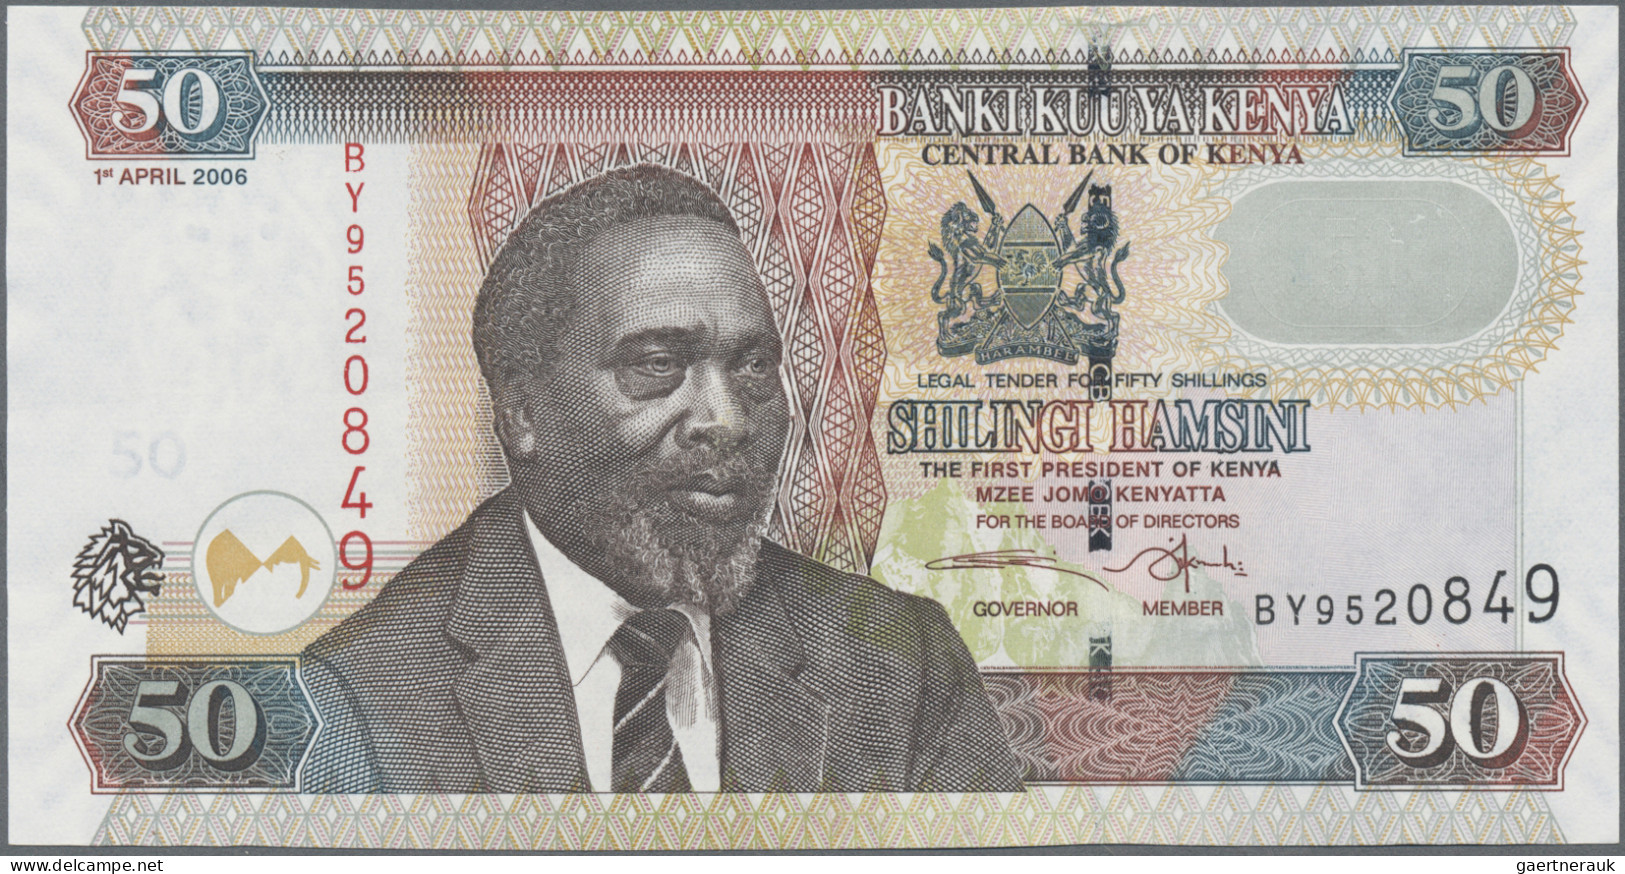 Kenya: Central Bank Of Kenya, Lot With 8 Banknotes, Series 1978-2006, Comprising - Kenya